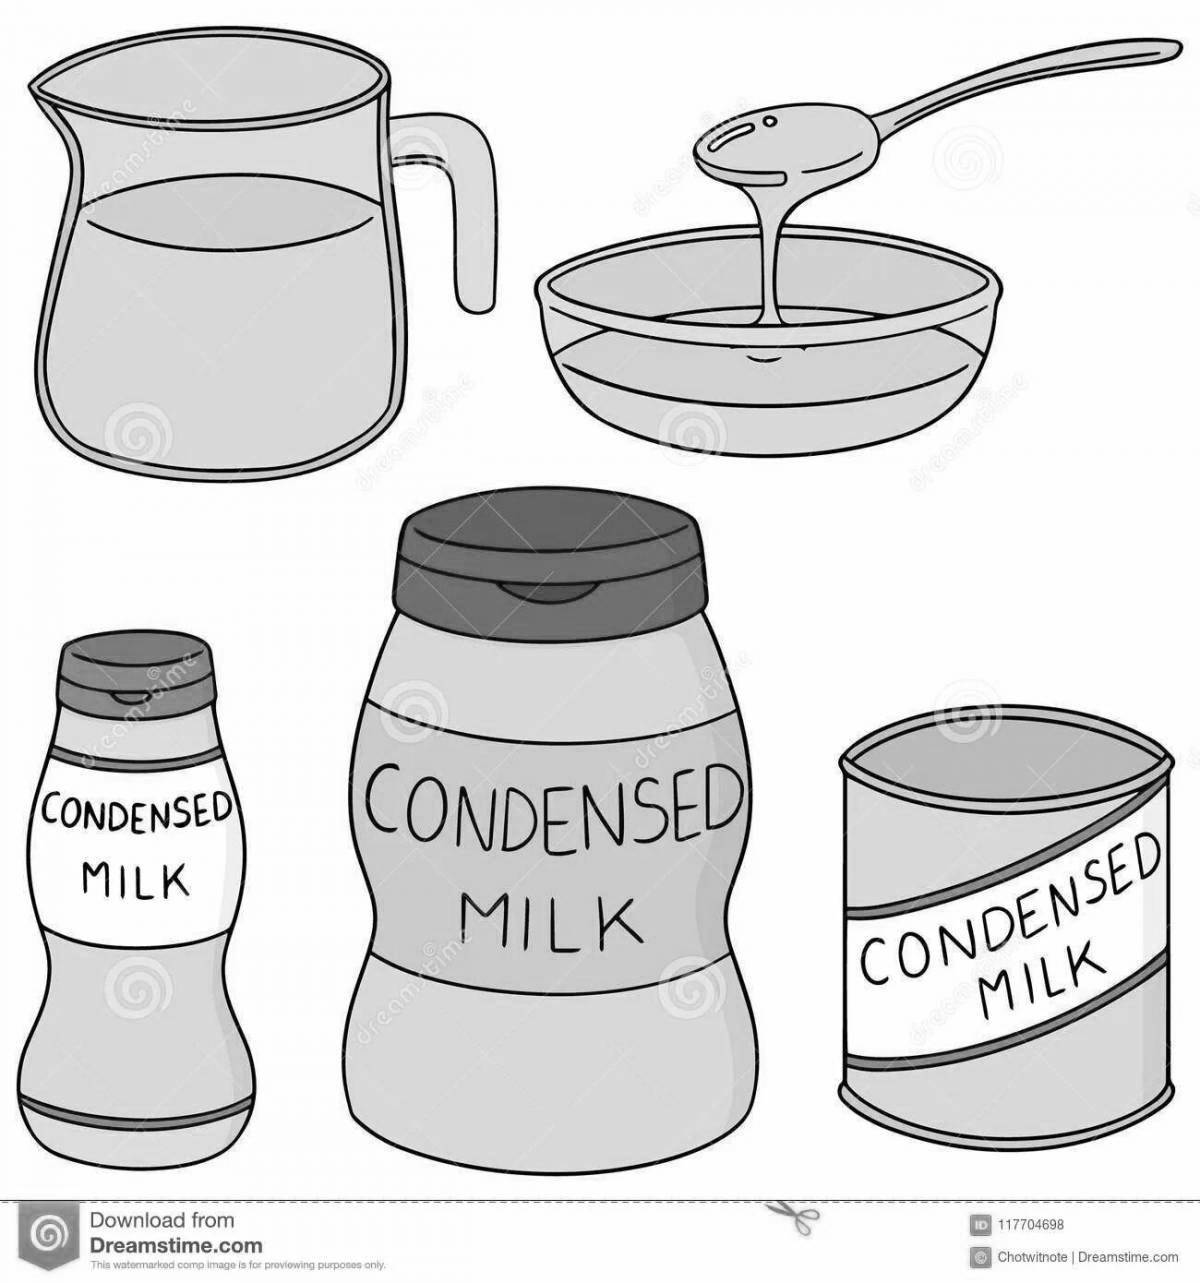 Joyful condensed milk coloring page